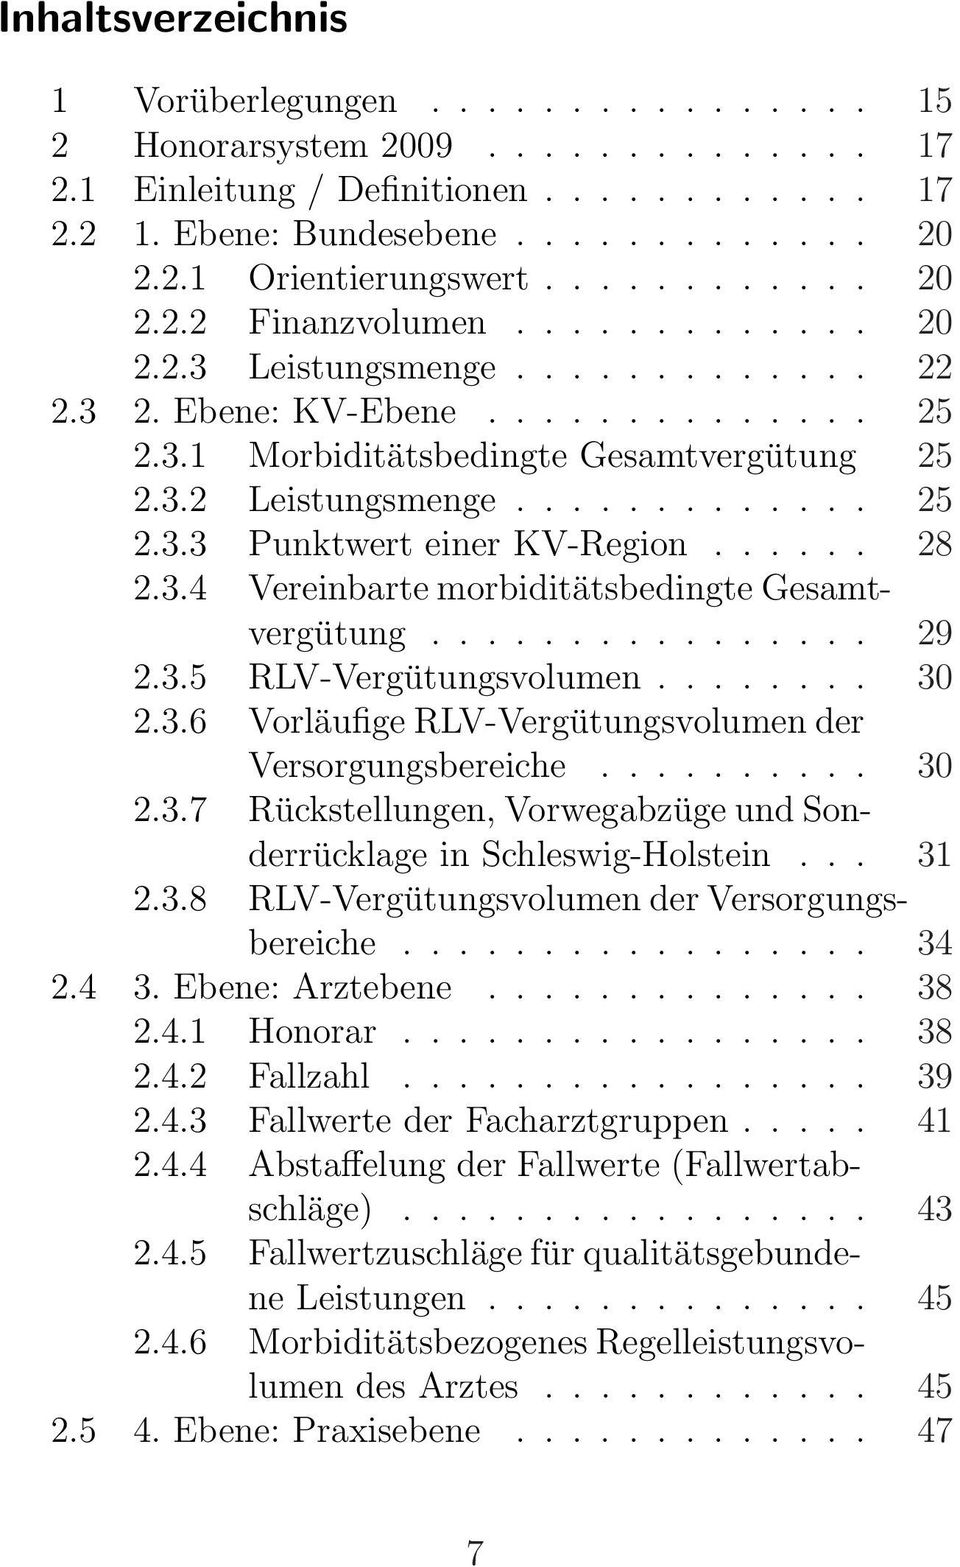 ..... 28 2.3.4 Vereinbarte morbiditätsbedingte Gesamtvergütung................ 29 2.3.5 RLV-Vergütungsvolumen........ 30 2.3.6 Vorläufige RLV-Vergütungsvolumen der Versorgungsbereiche.......... 30 2.3.7 Rückstellungen, Vorwegabzüge und Sonderrücklage in Schleswig-Holstein.